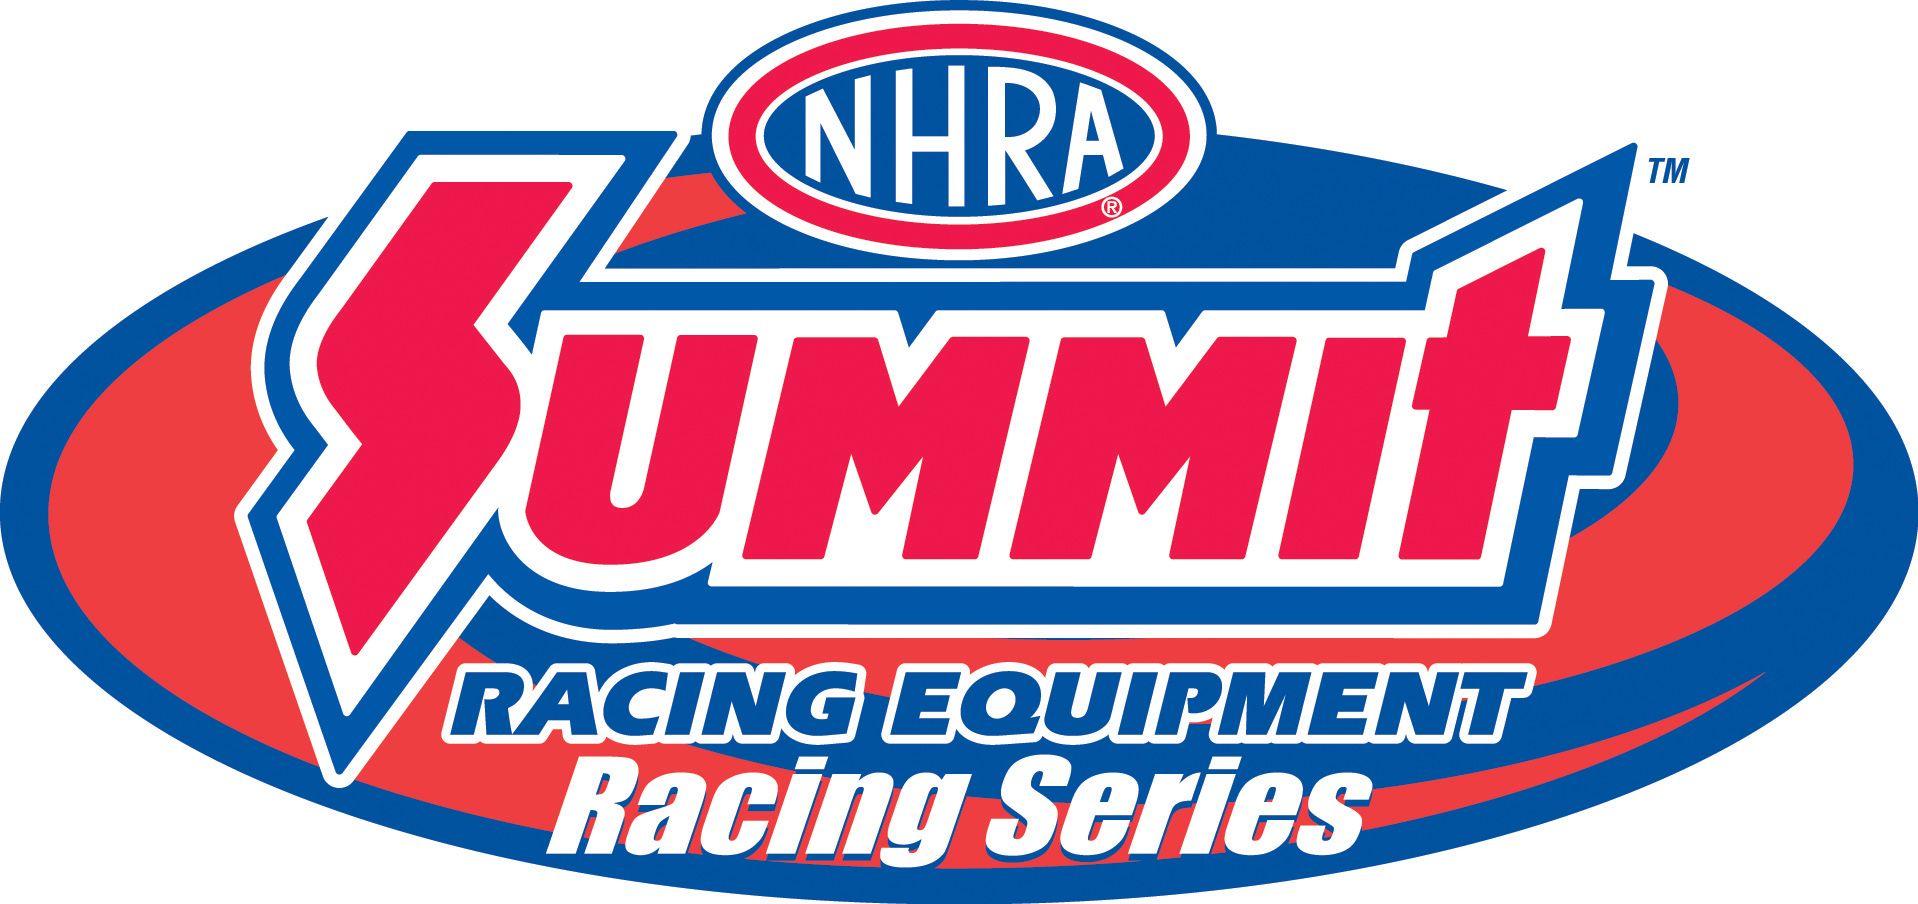 NHRA Drag Racing Logo - Drag Racing News and Results | Drag Race Results